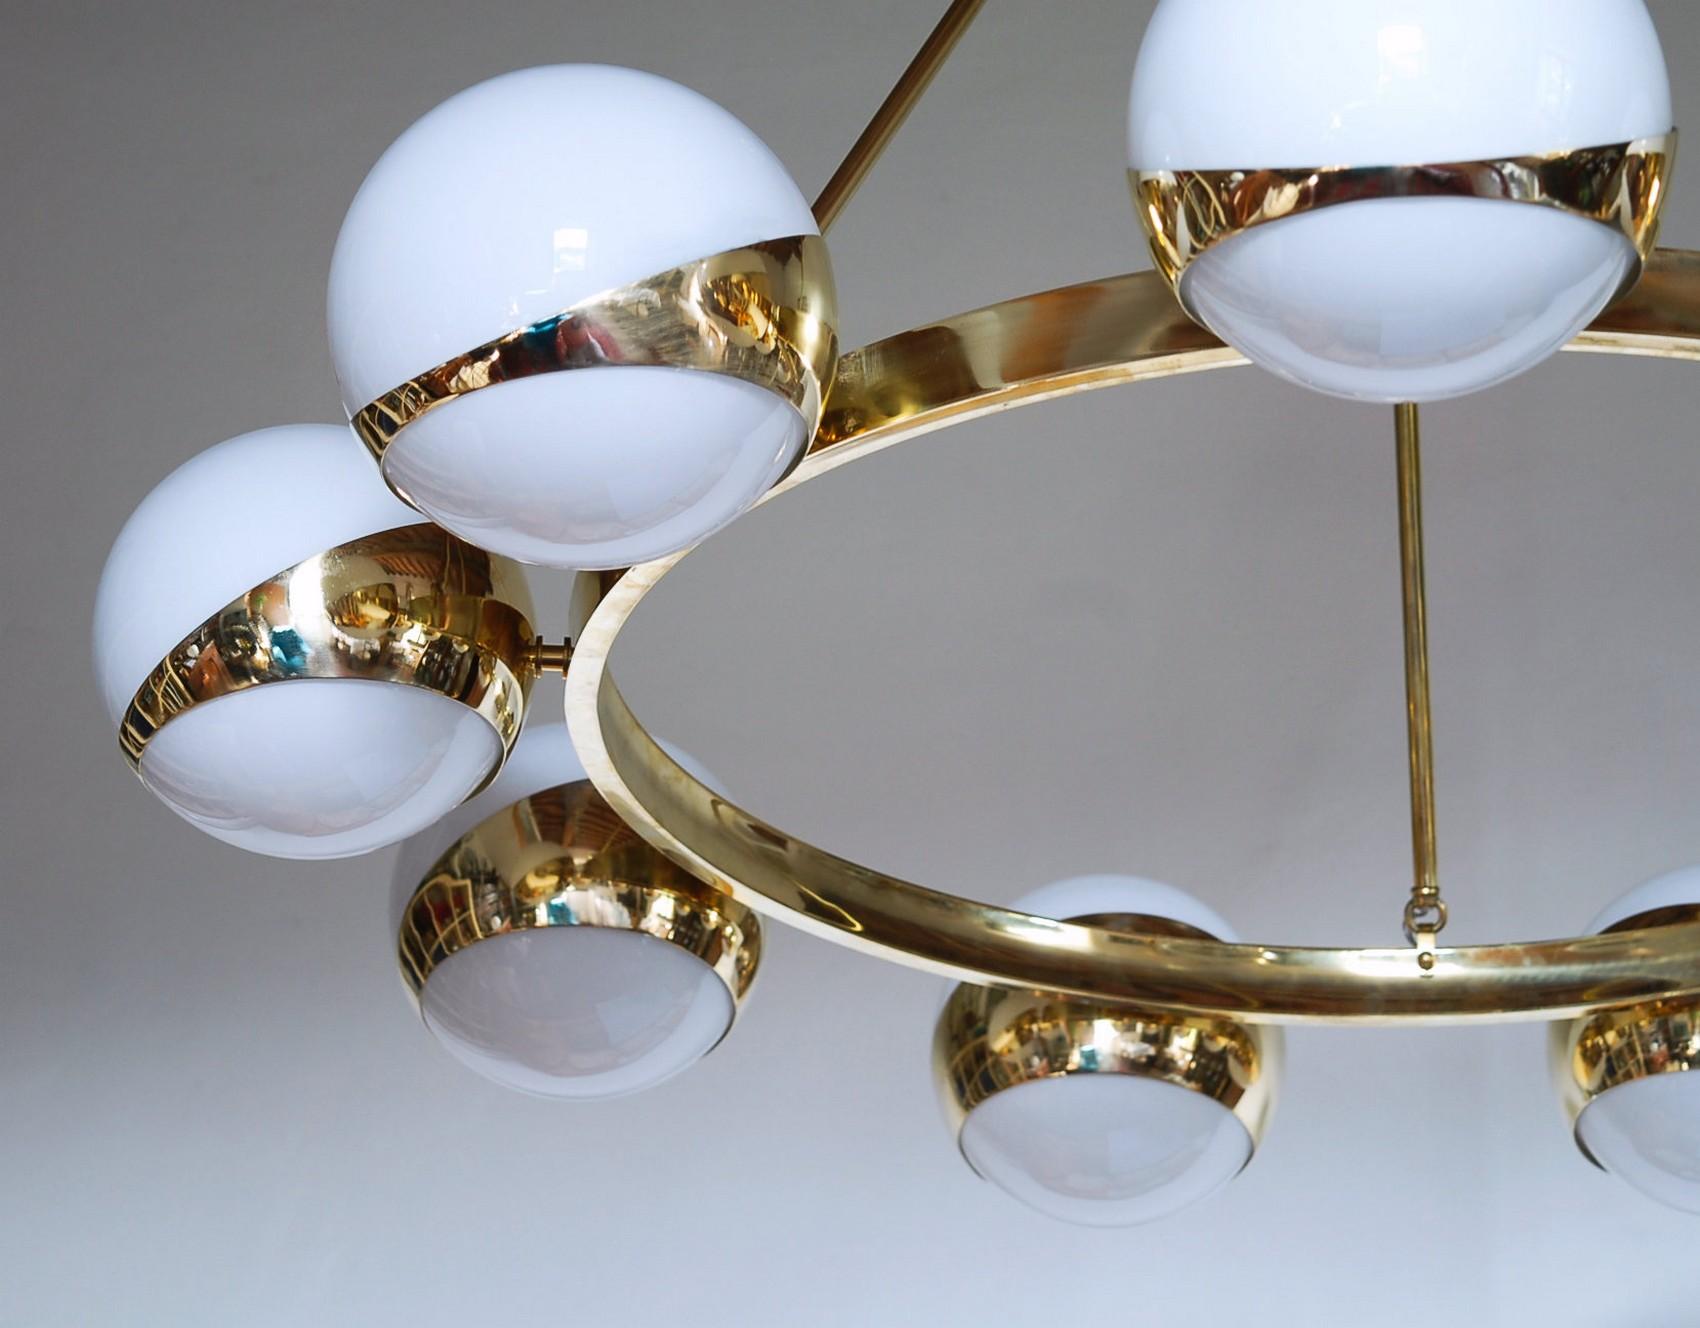 Brass and lattimo glass chandelier, 9 spheres Stilnovo Designed for light output 7